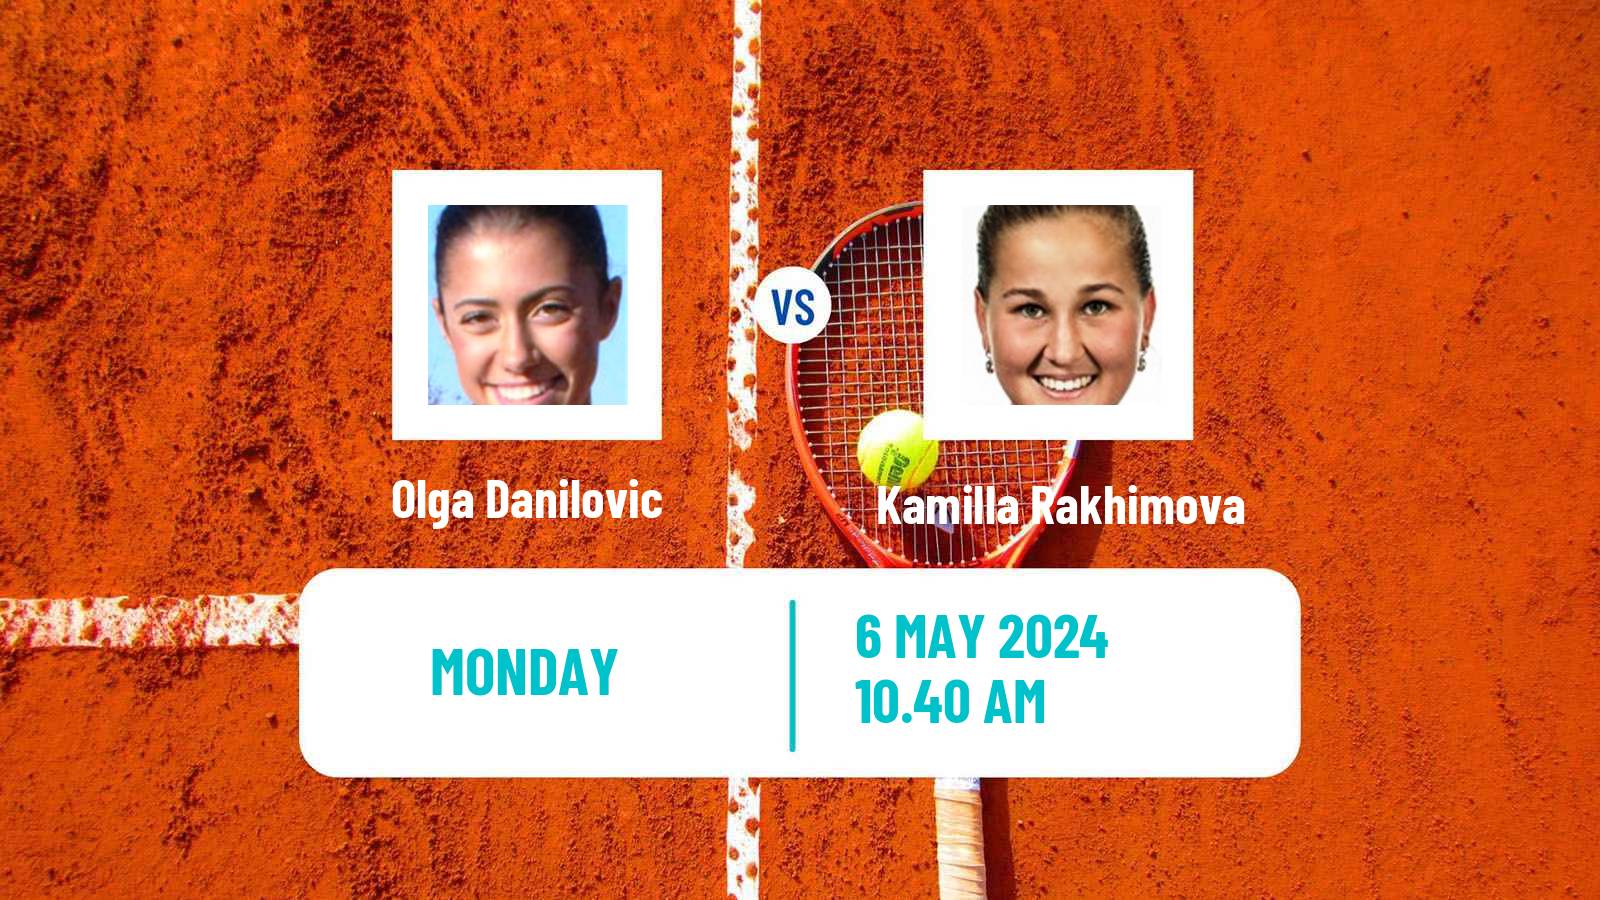 Tennis WTA Roma Olga Danilovic - Kamilla Rakhimova